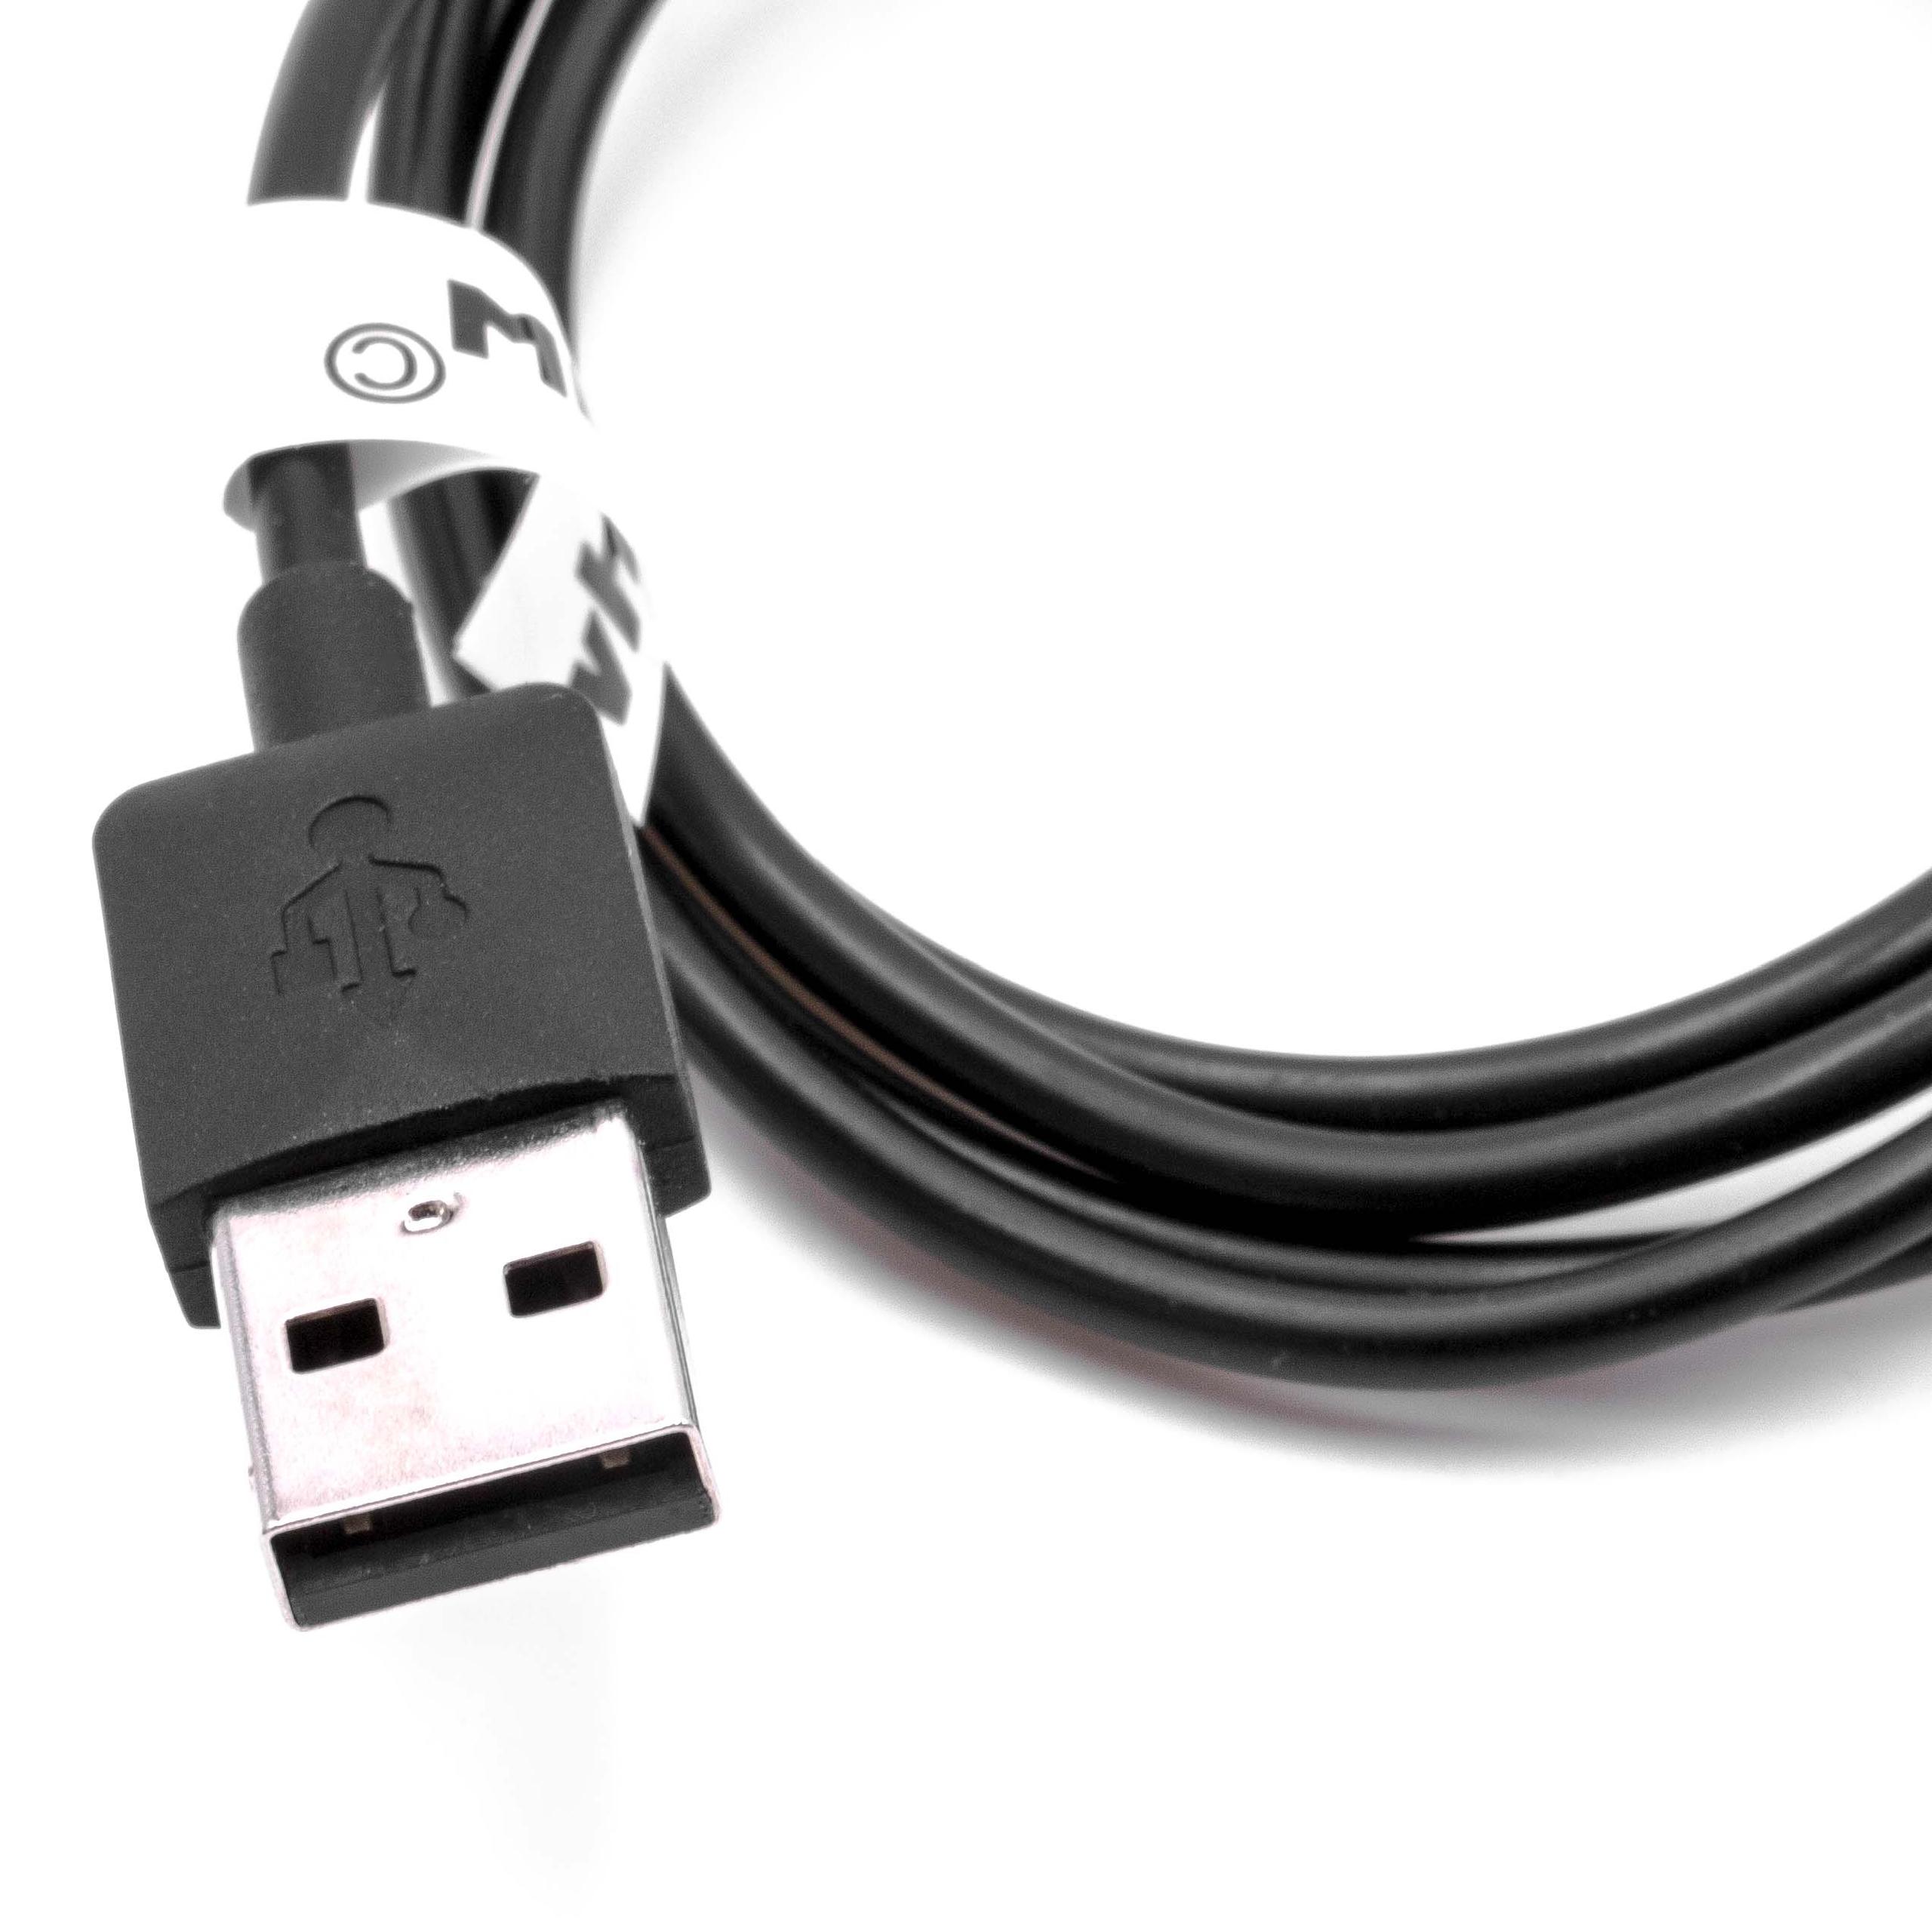 Station de charge pour bracelet d'activité Garmin Forerunner et autres – câble de 95 cm, fiche USB